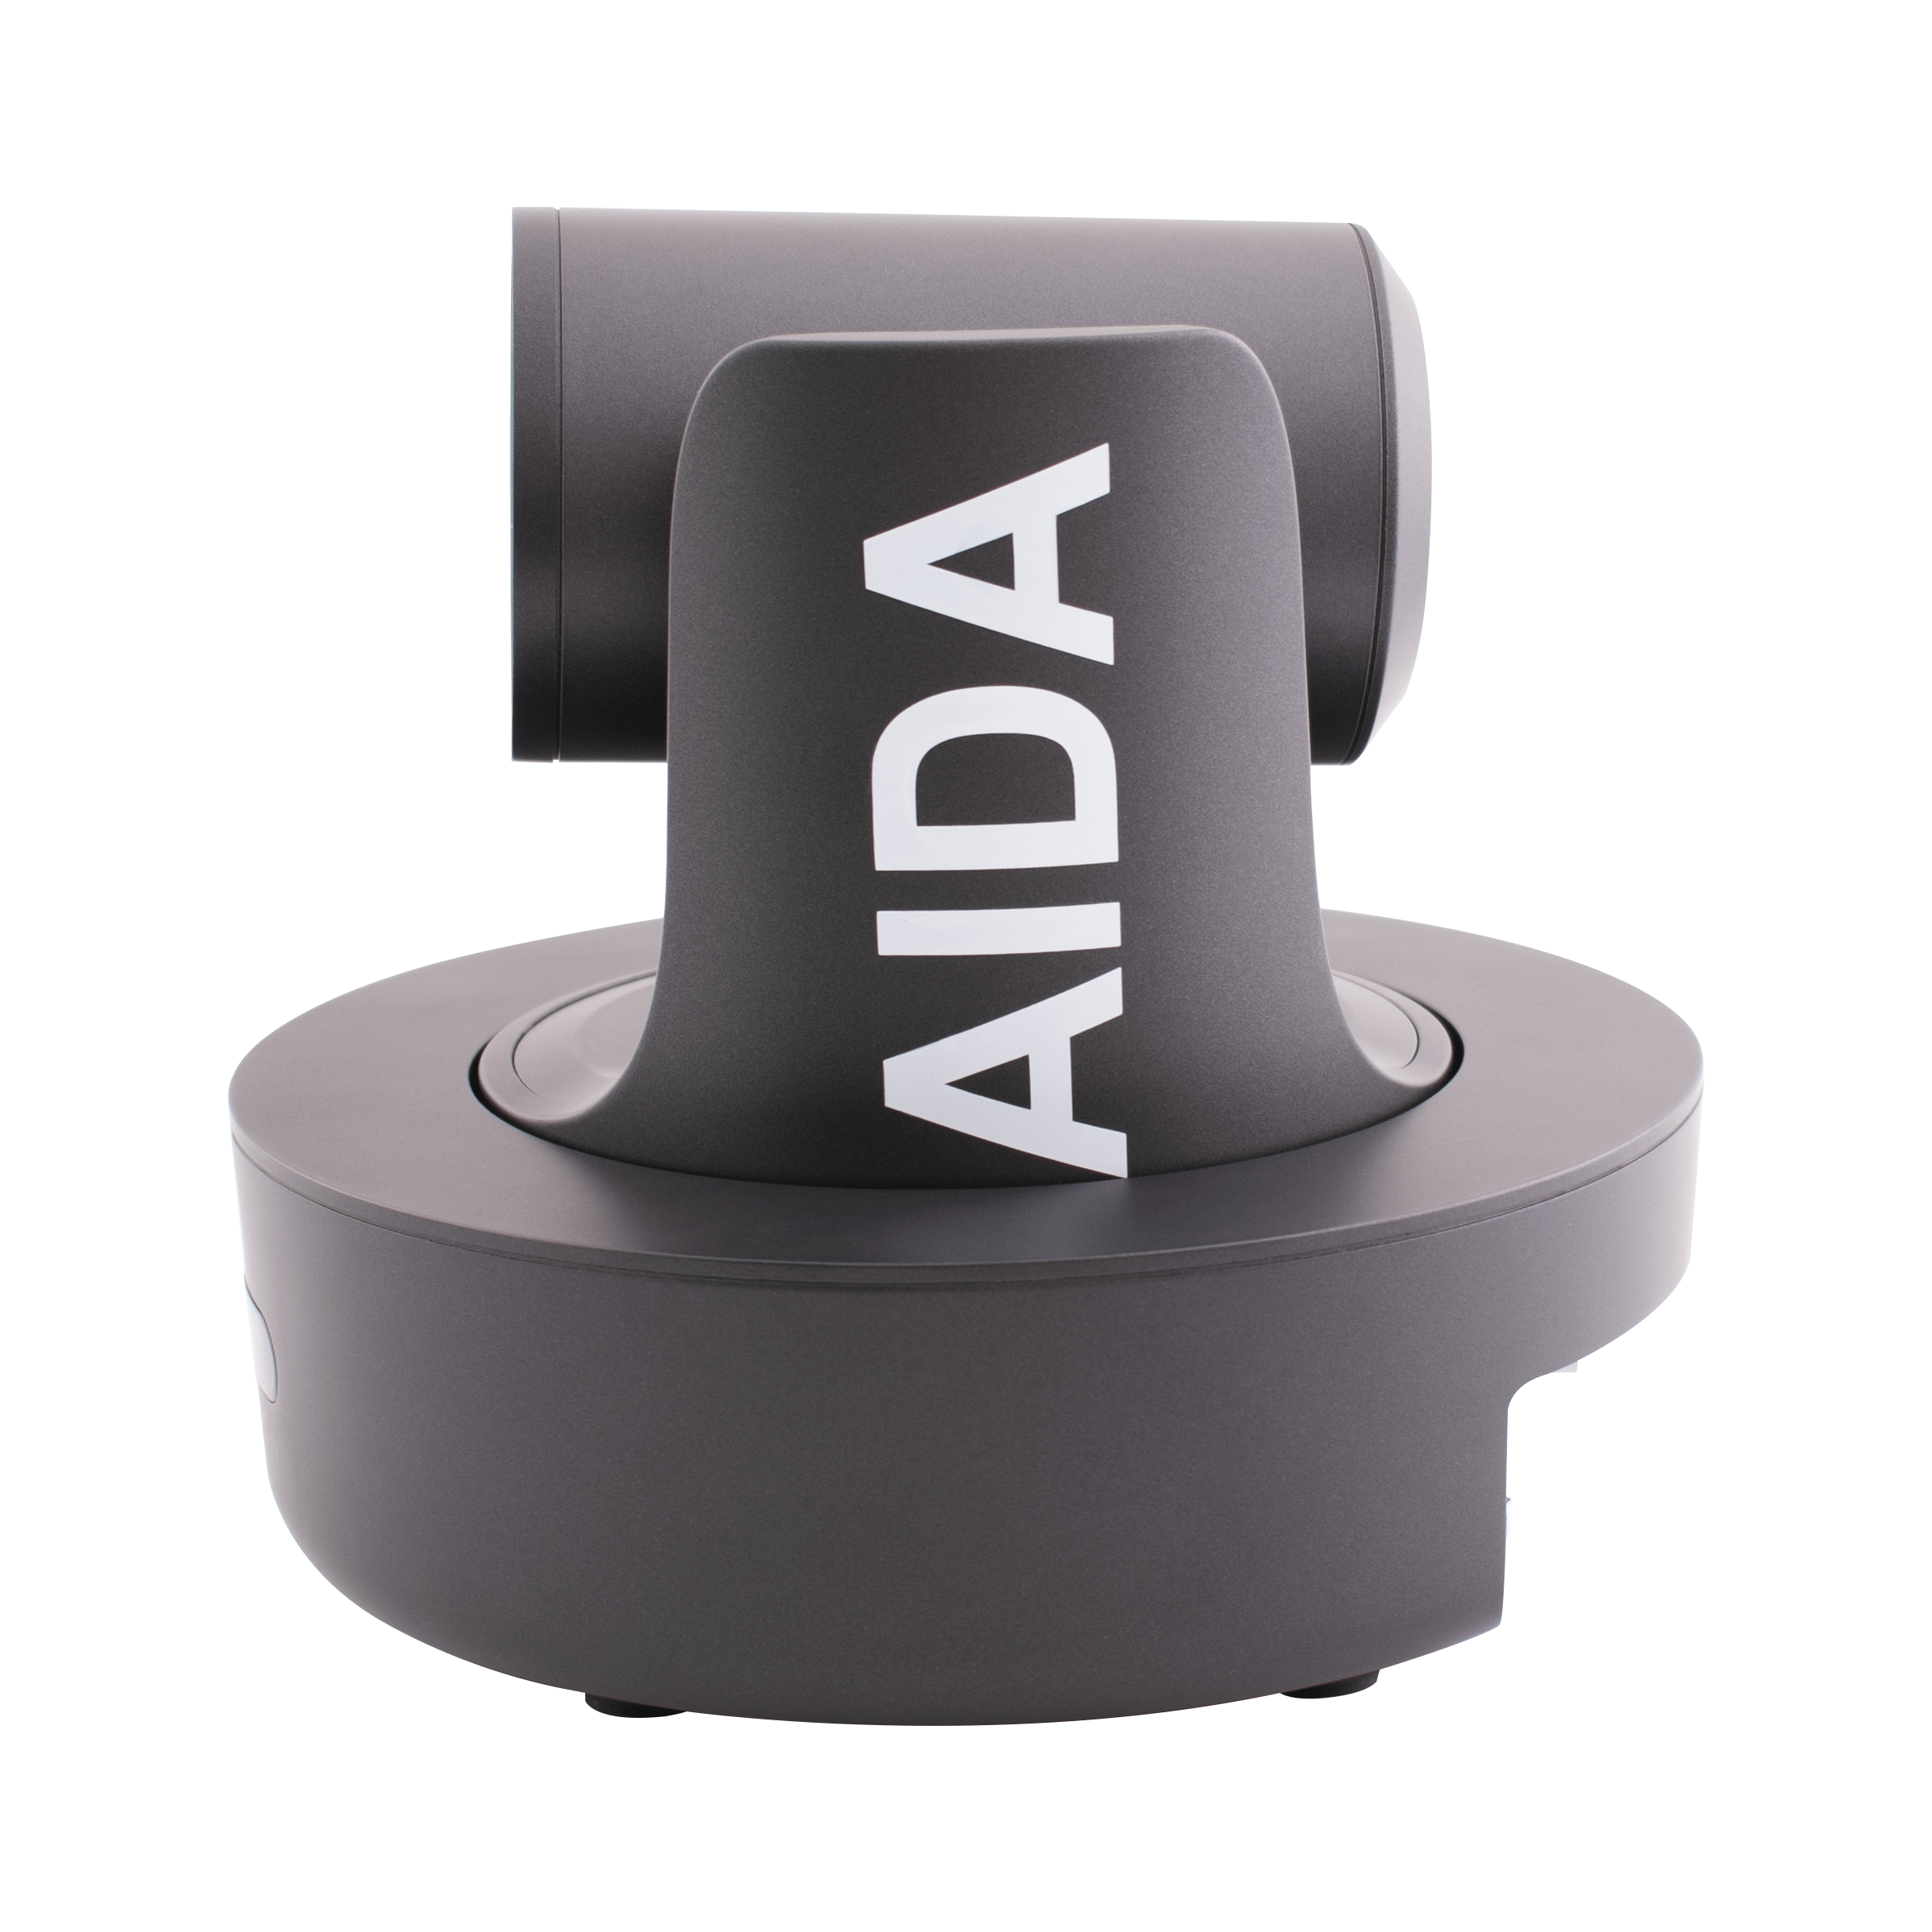 AIDA Imaging PTZ-NDI-X12 Full HD NDI Broadcast PTZ Camera